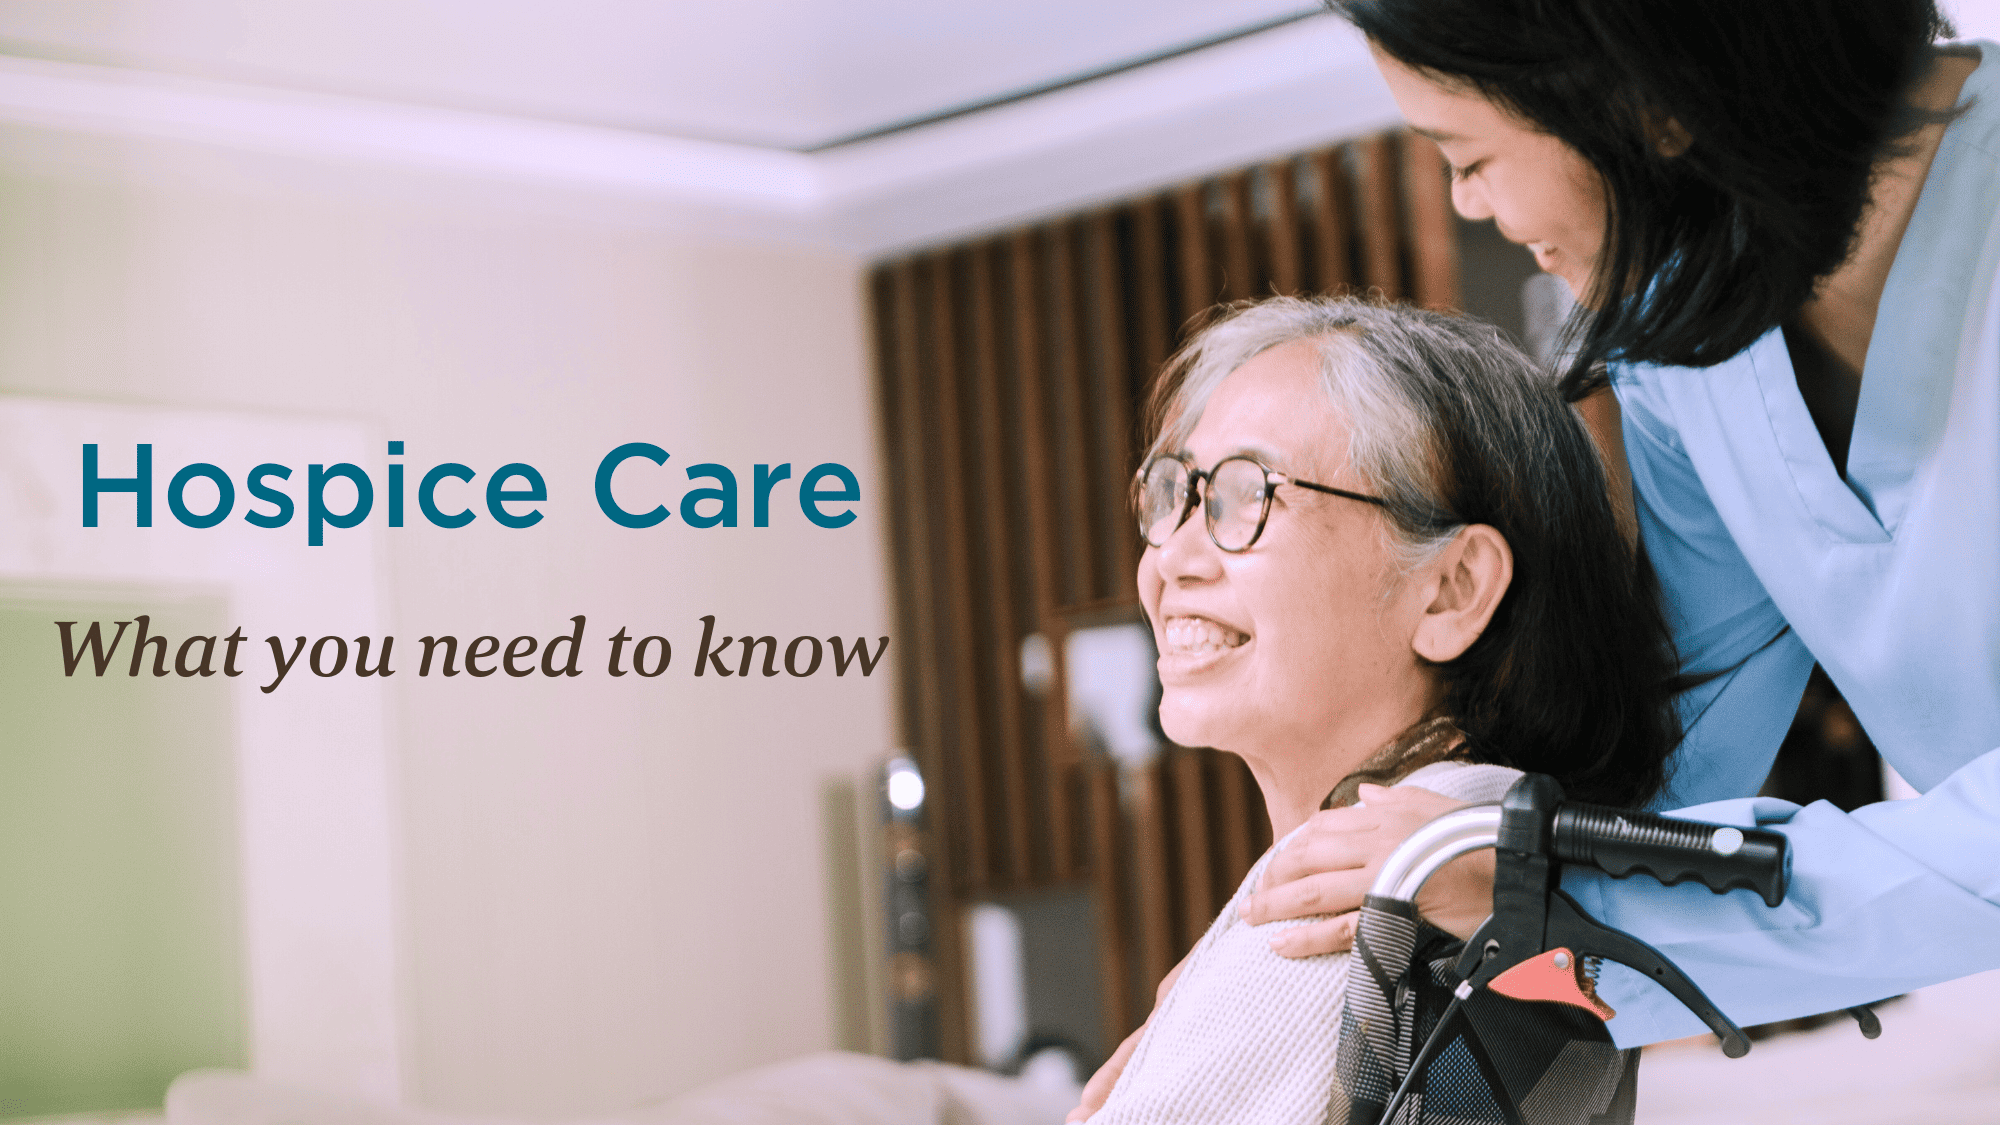 Hospice Home Care